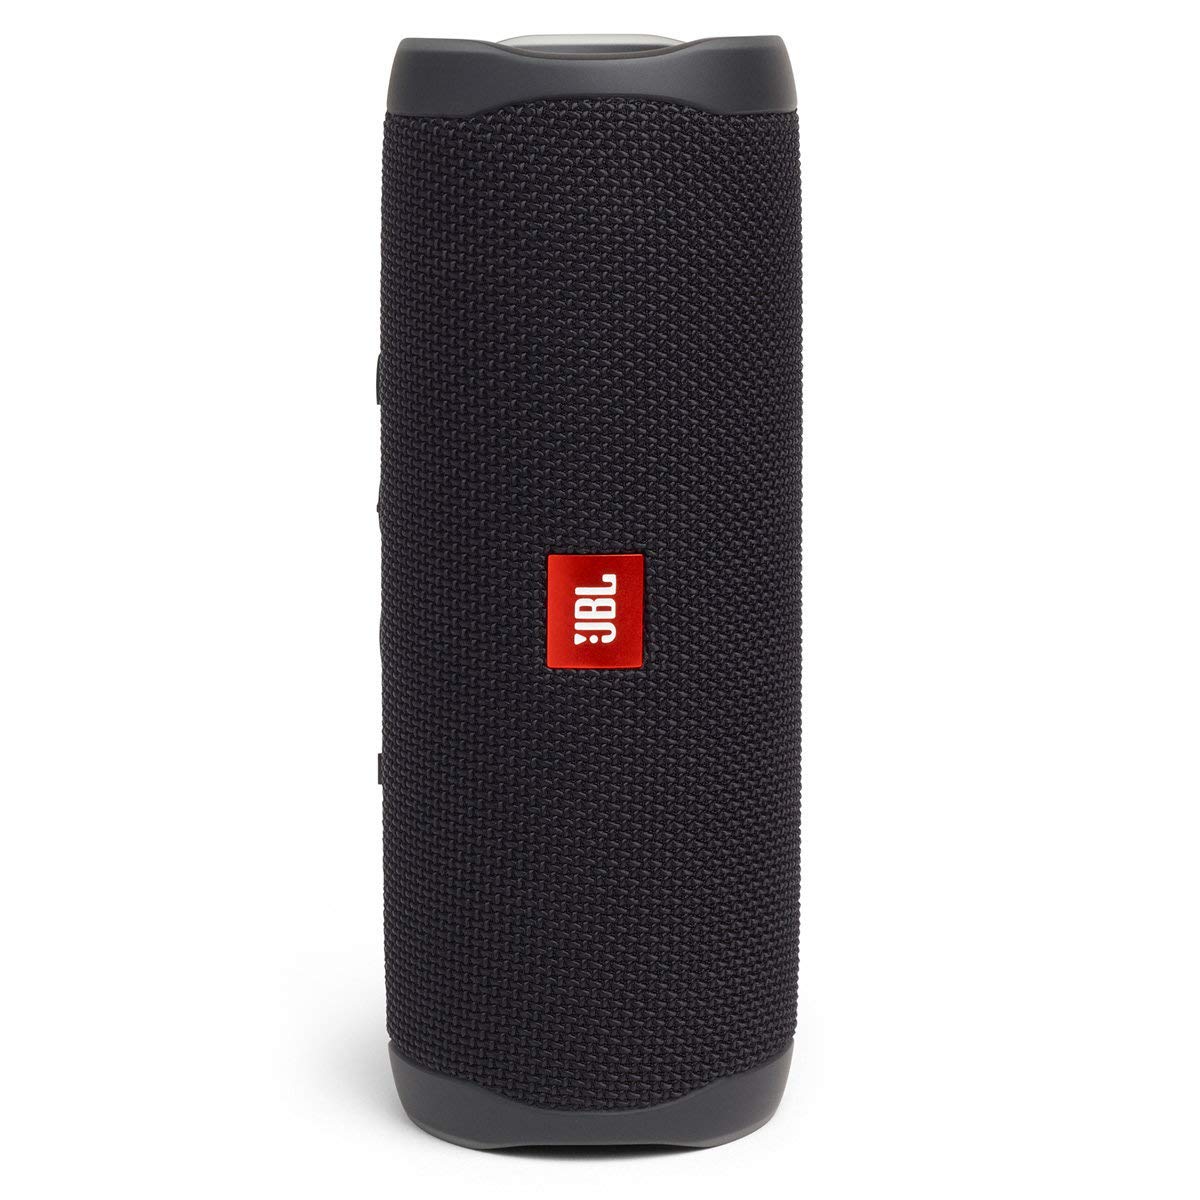 JBL Flip 5 Waterproof Portable Bluetooth Speaker - Black (Refurbished)